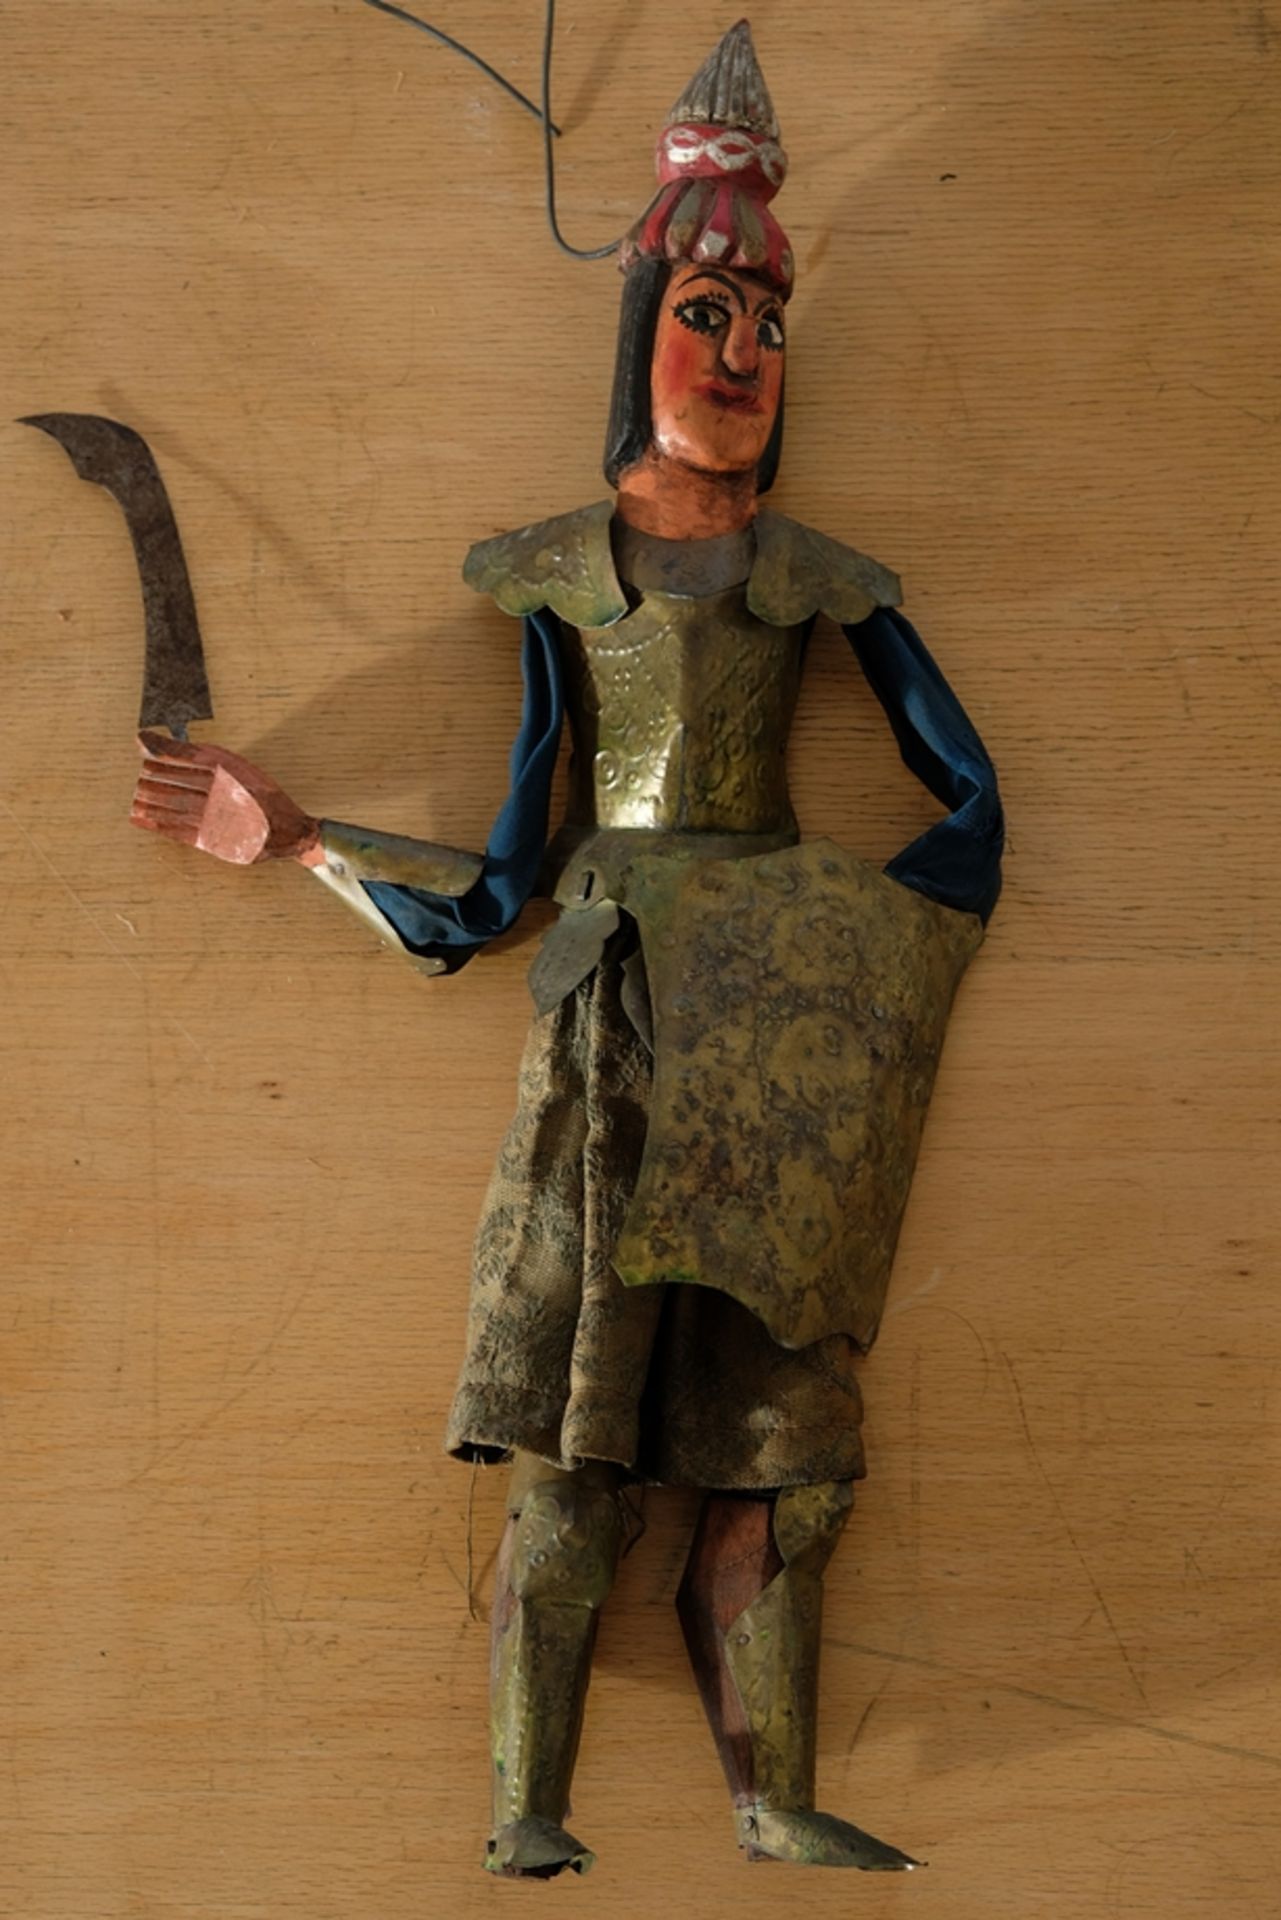 Theaterpuppe Krieger, wohl Marionette ohne Fäden, um 1900, Tunesien.